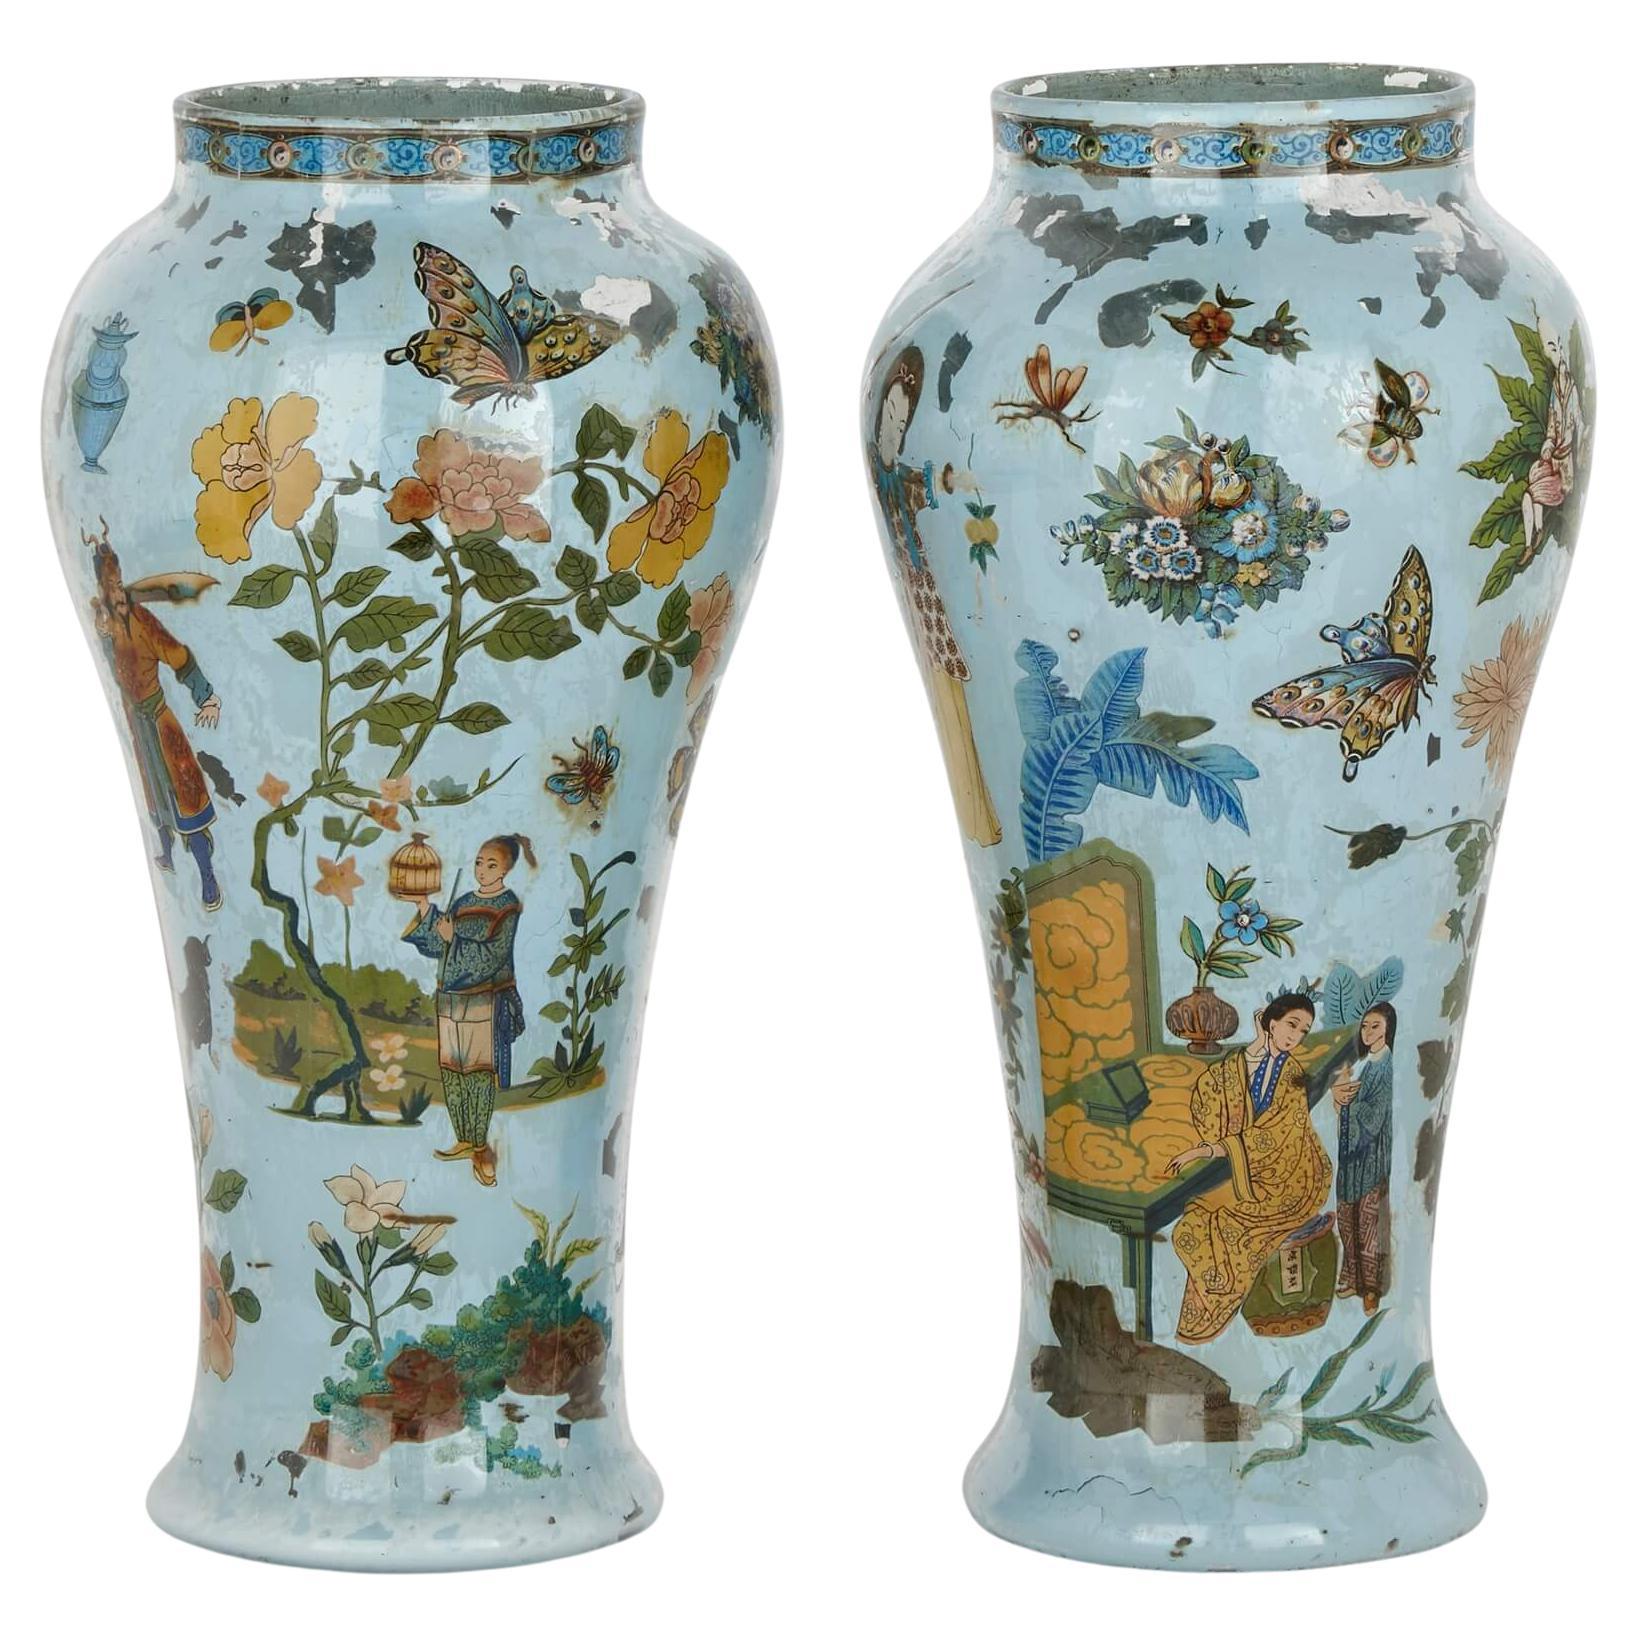 Paire de vases en verre soufflé de style chinoiserie italienne du 18ème siècle